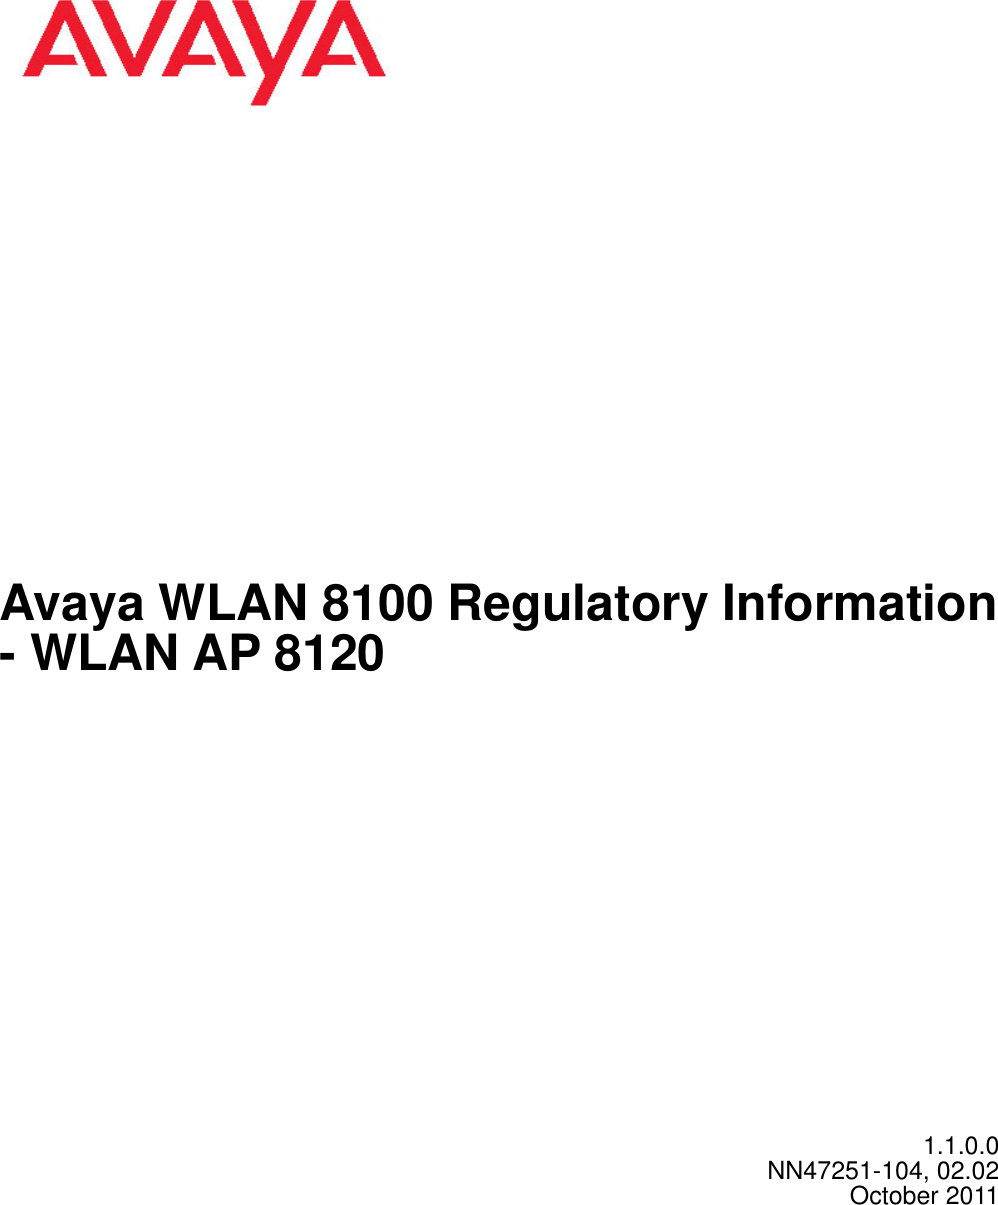 Avaya WLAN 8100 Regulatory Information- WLAN AP 81201.1.0.0NN47251-104, 02.02October 2011